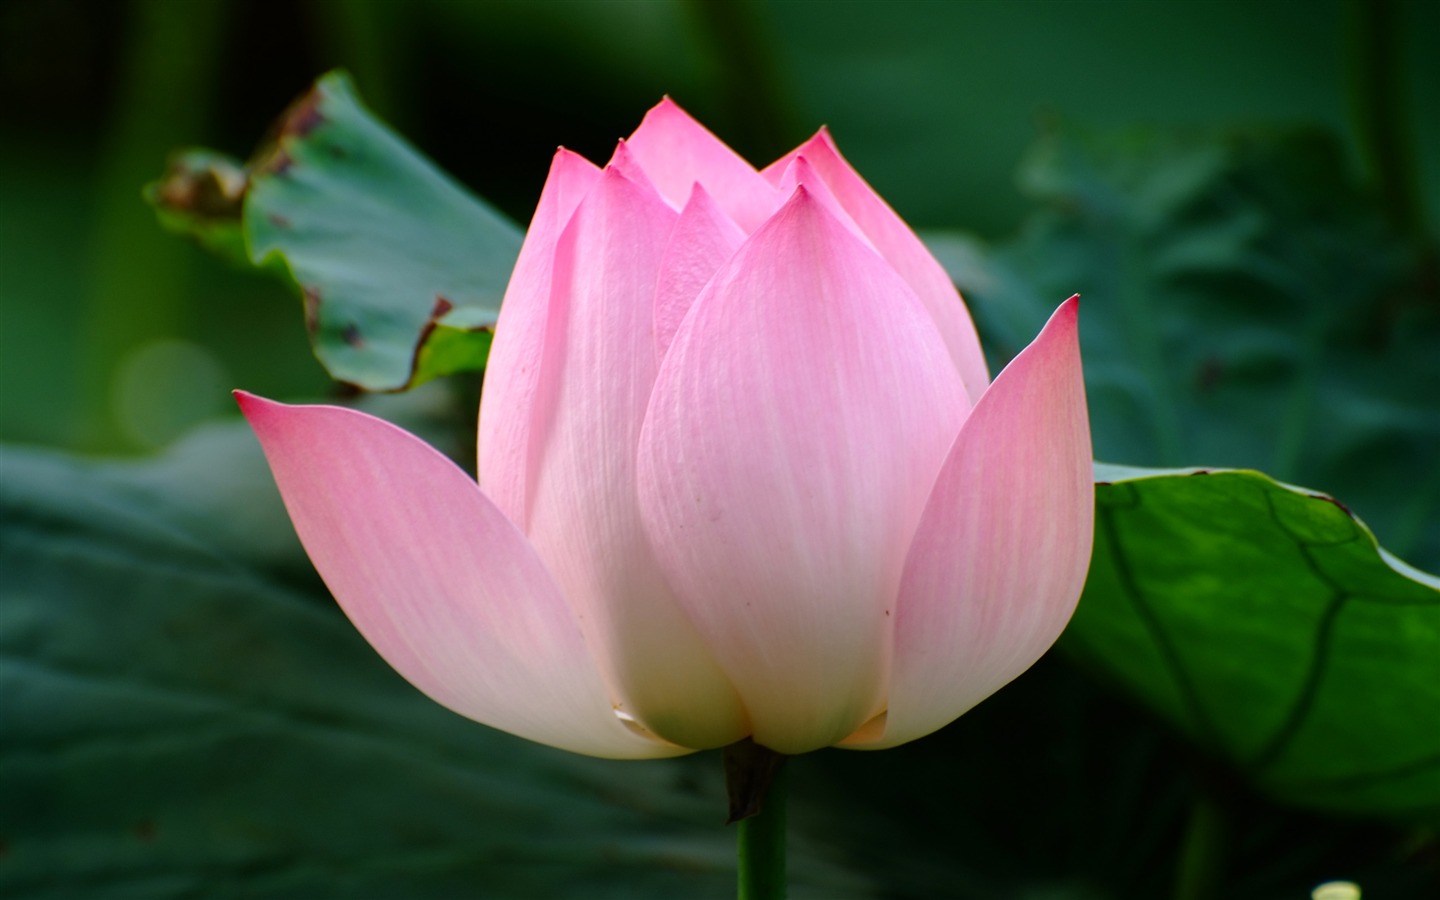 Rose Garden of the Lotus (rebar works) #6 - 1440x900